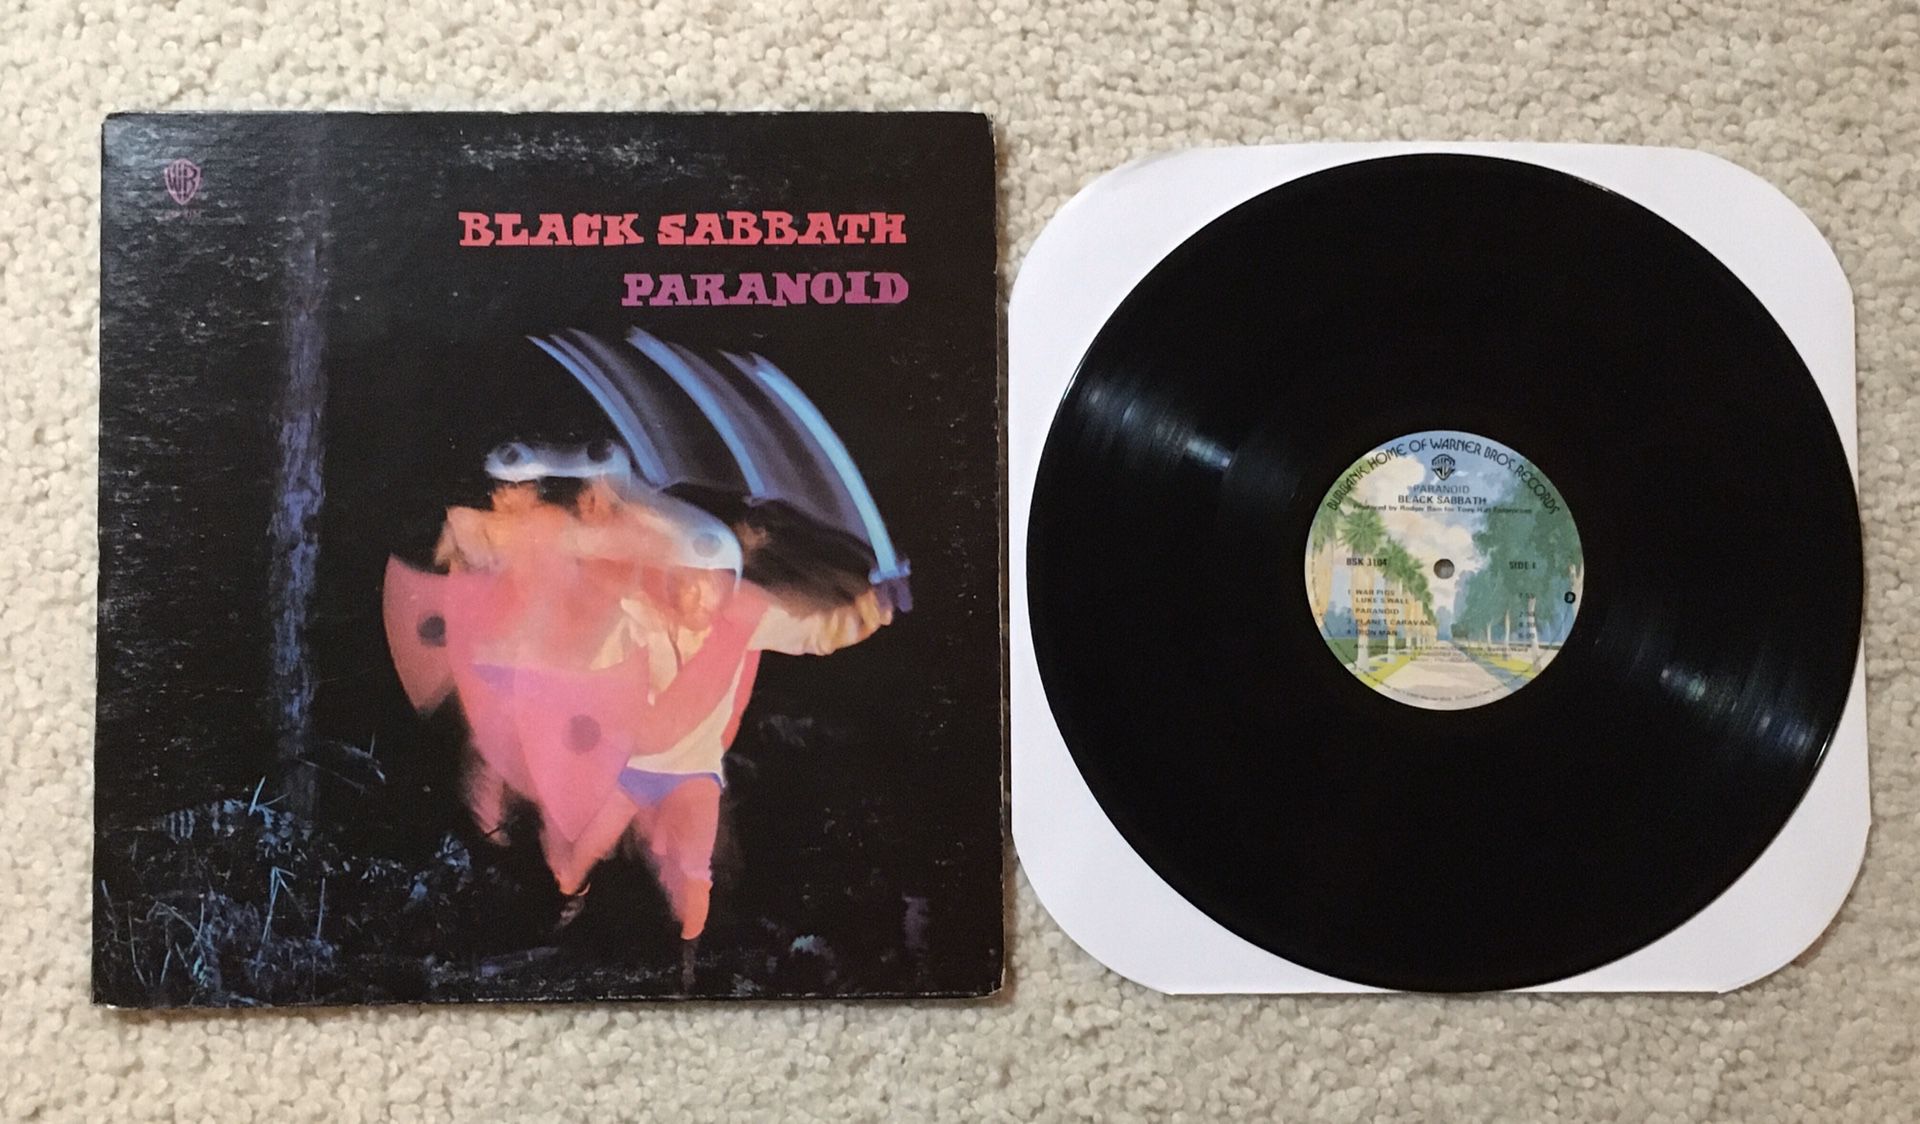 Black Sabbath “Paranoid” vinyl lp 1978 Warner Records Palm Tree Label Los Angeles Pressing very nice copy Metal